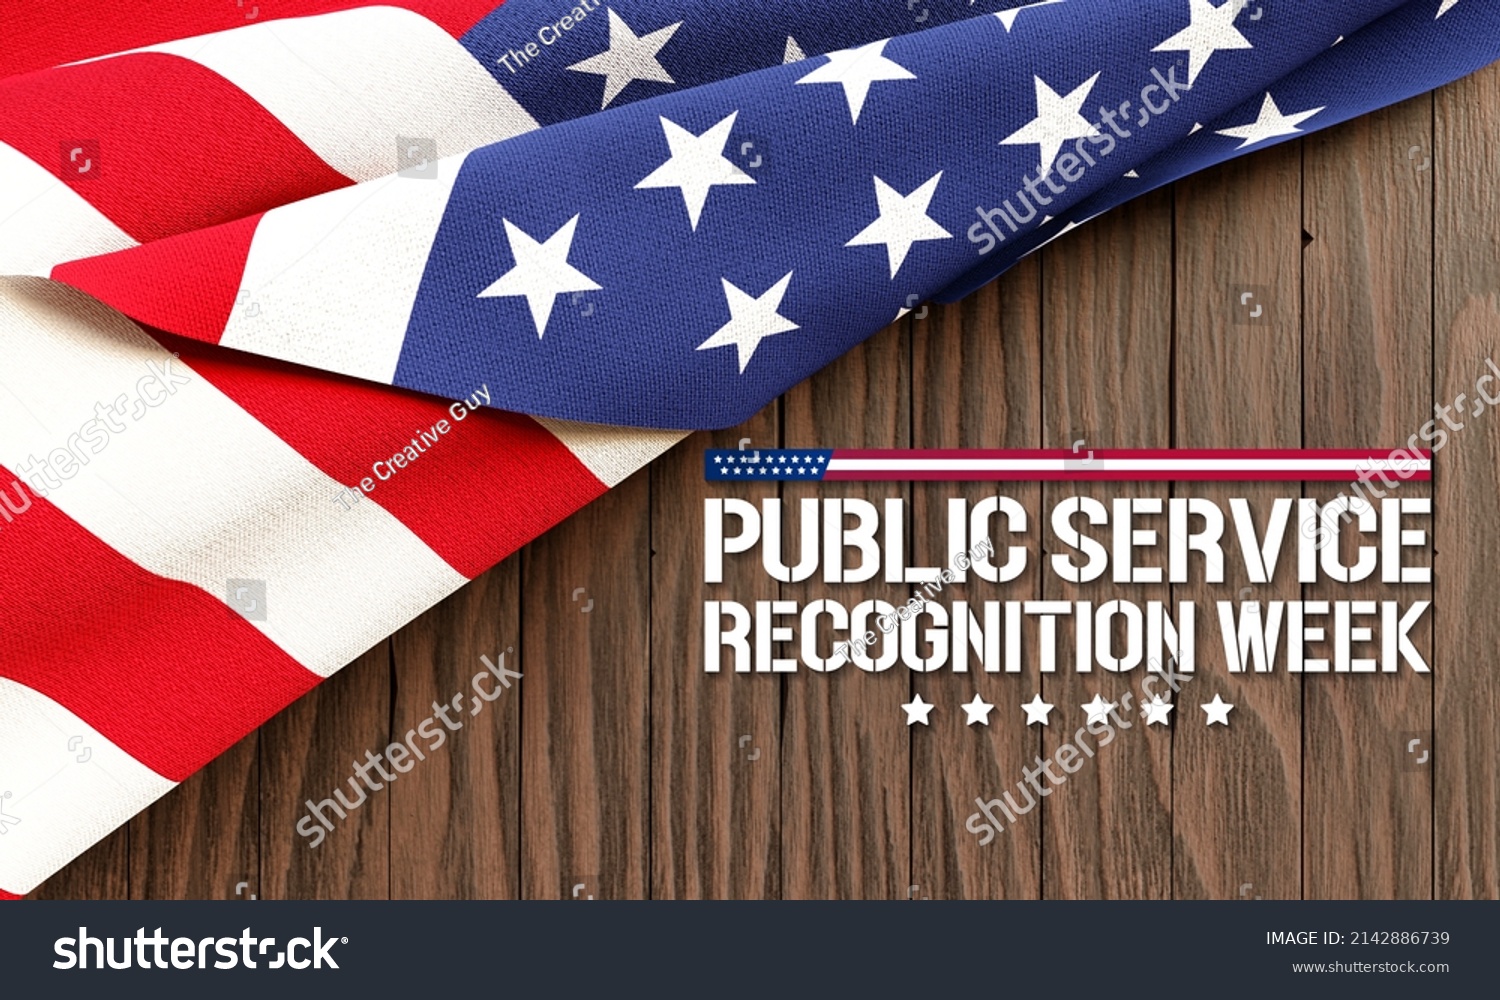 81 Public service recognition week Images, Stock Photos & Vectors